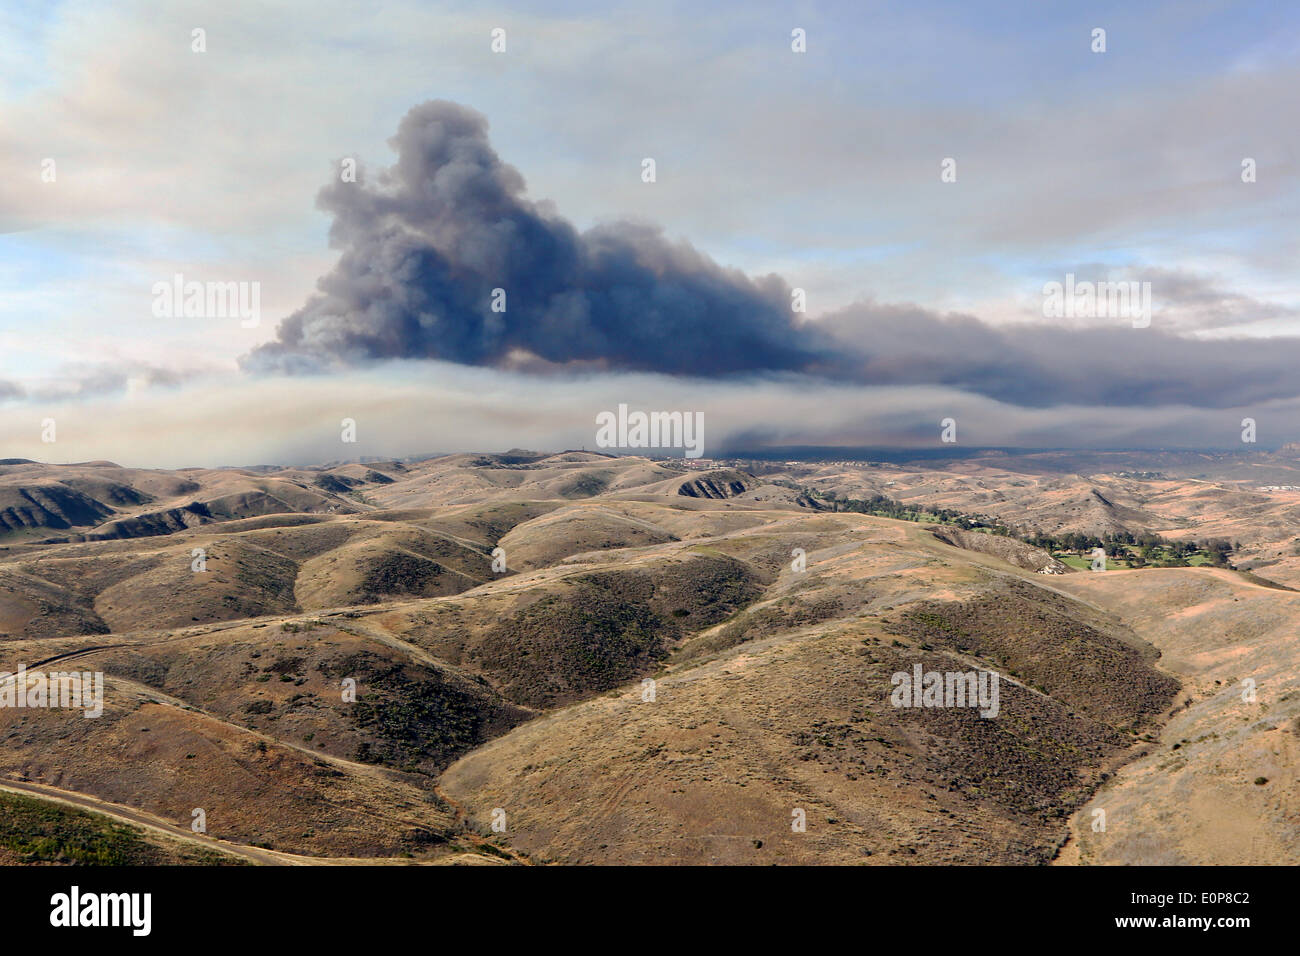 Rauch steigt über die Dürre betroffenen Ausläufern wie das Tomahawk Wildfire brennt weiter 16. Mai 2014 in Camp Pendleton, Kalifornien.  Evakuierungen gezwungen mehr als 13.000 Menschen aus ihren Häusern, als das Feuer brannte über San Diego County. Stockfoto